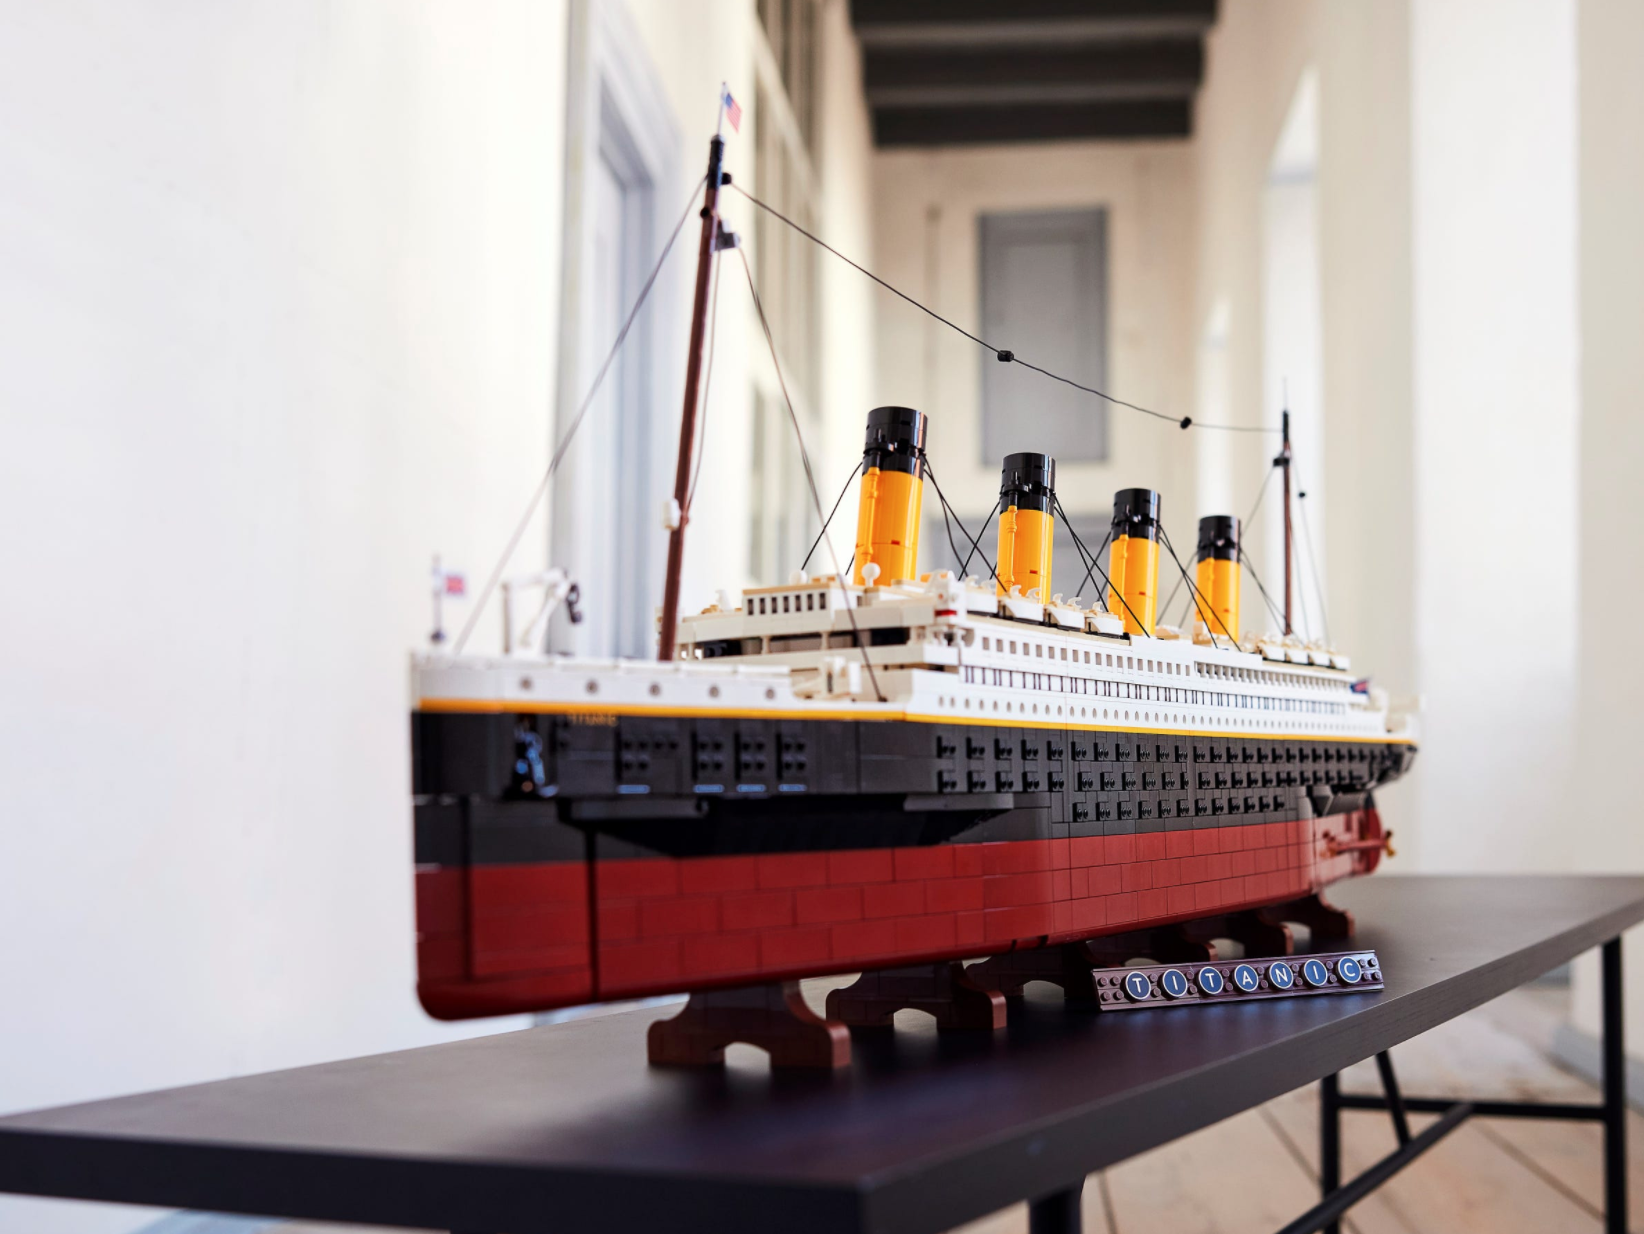 LEGO lanza un set para construir la réplica exacta del Titanic